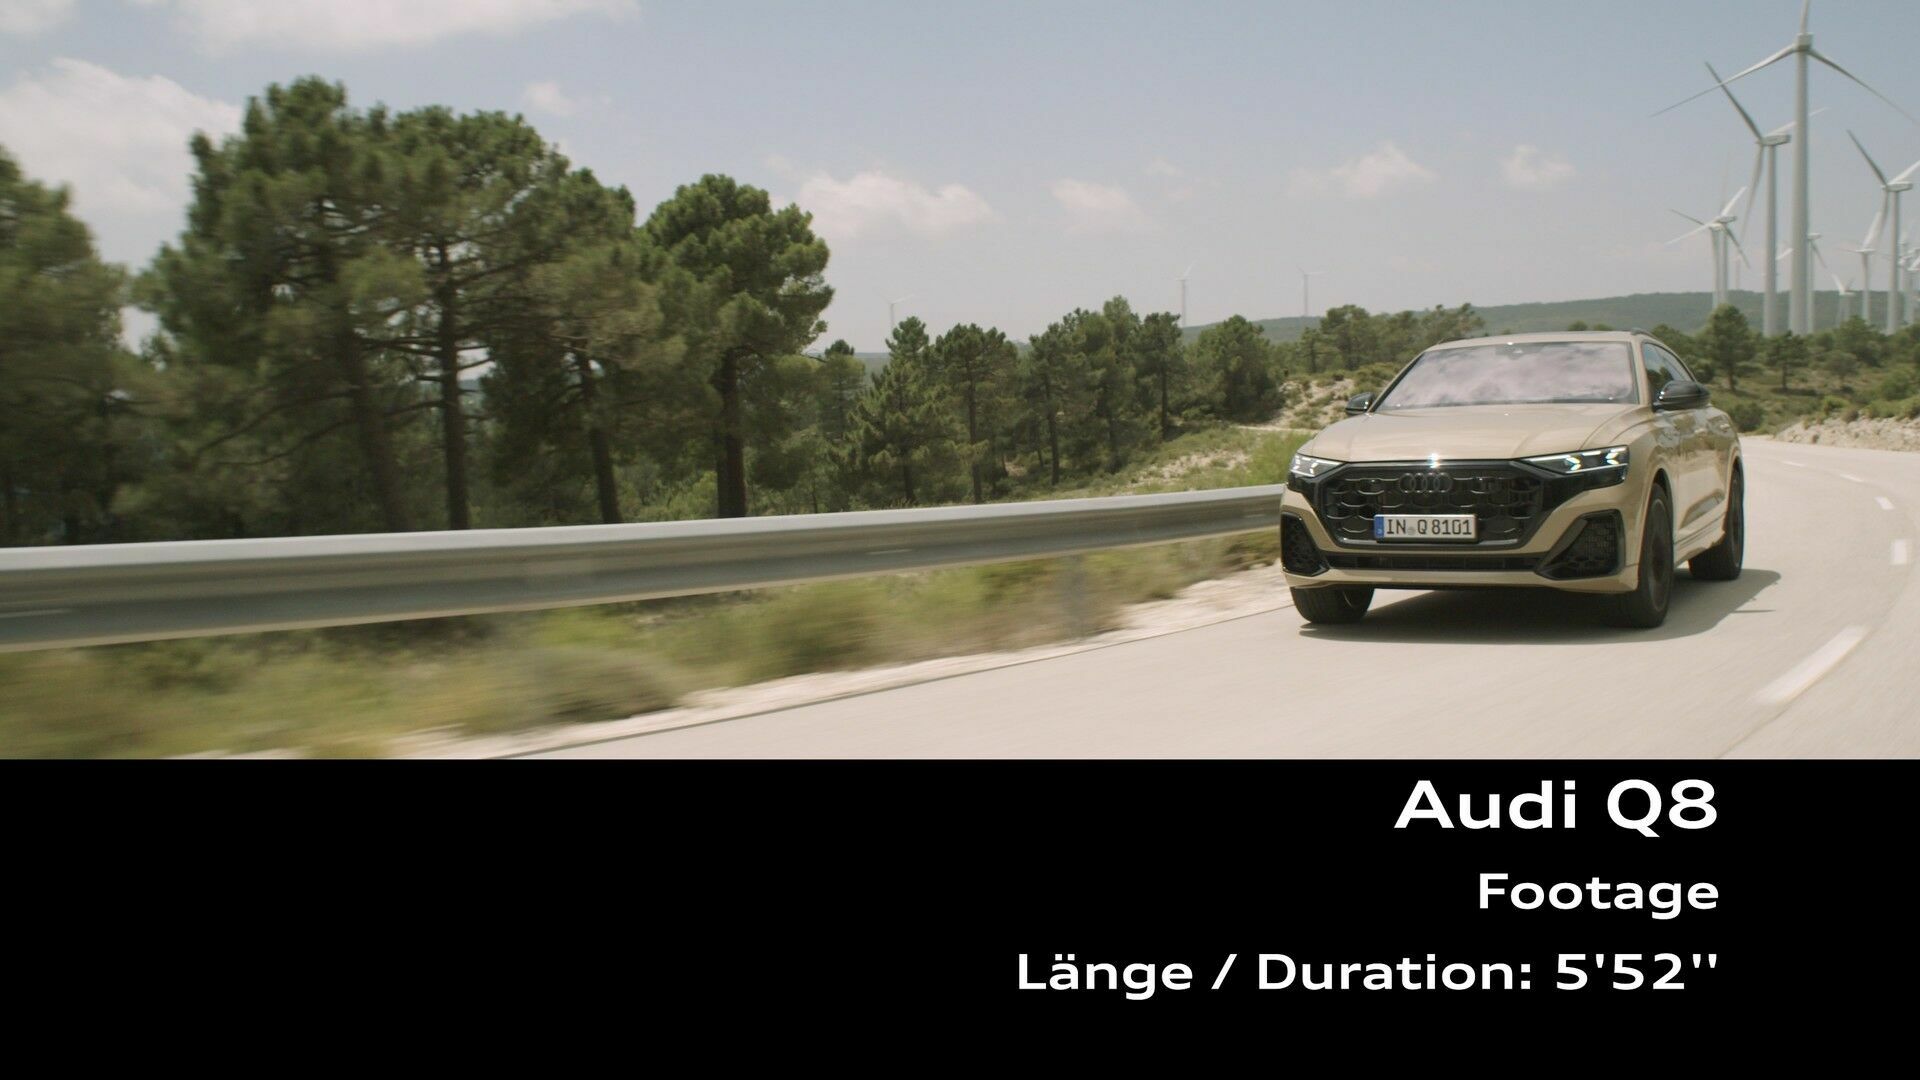 Footage: Audi Q8 (dynamisch)